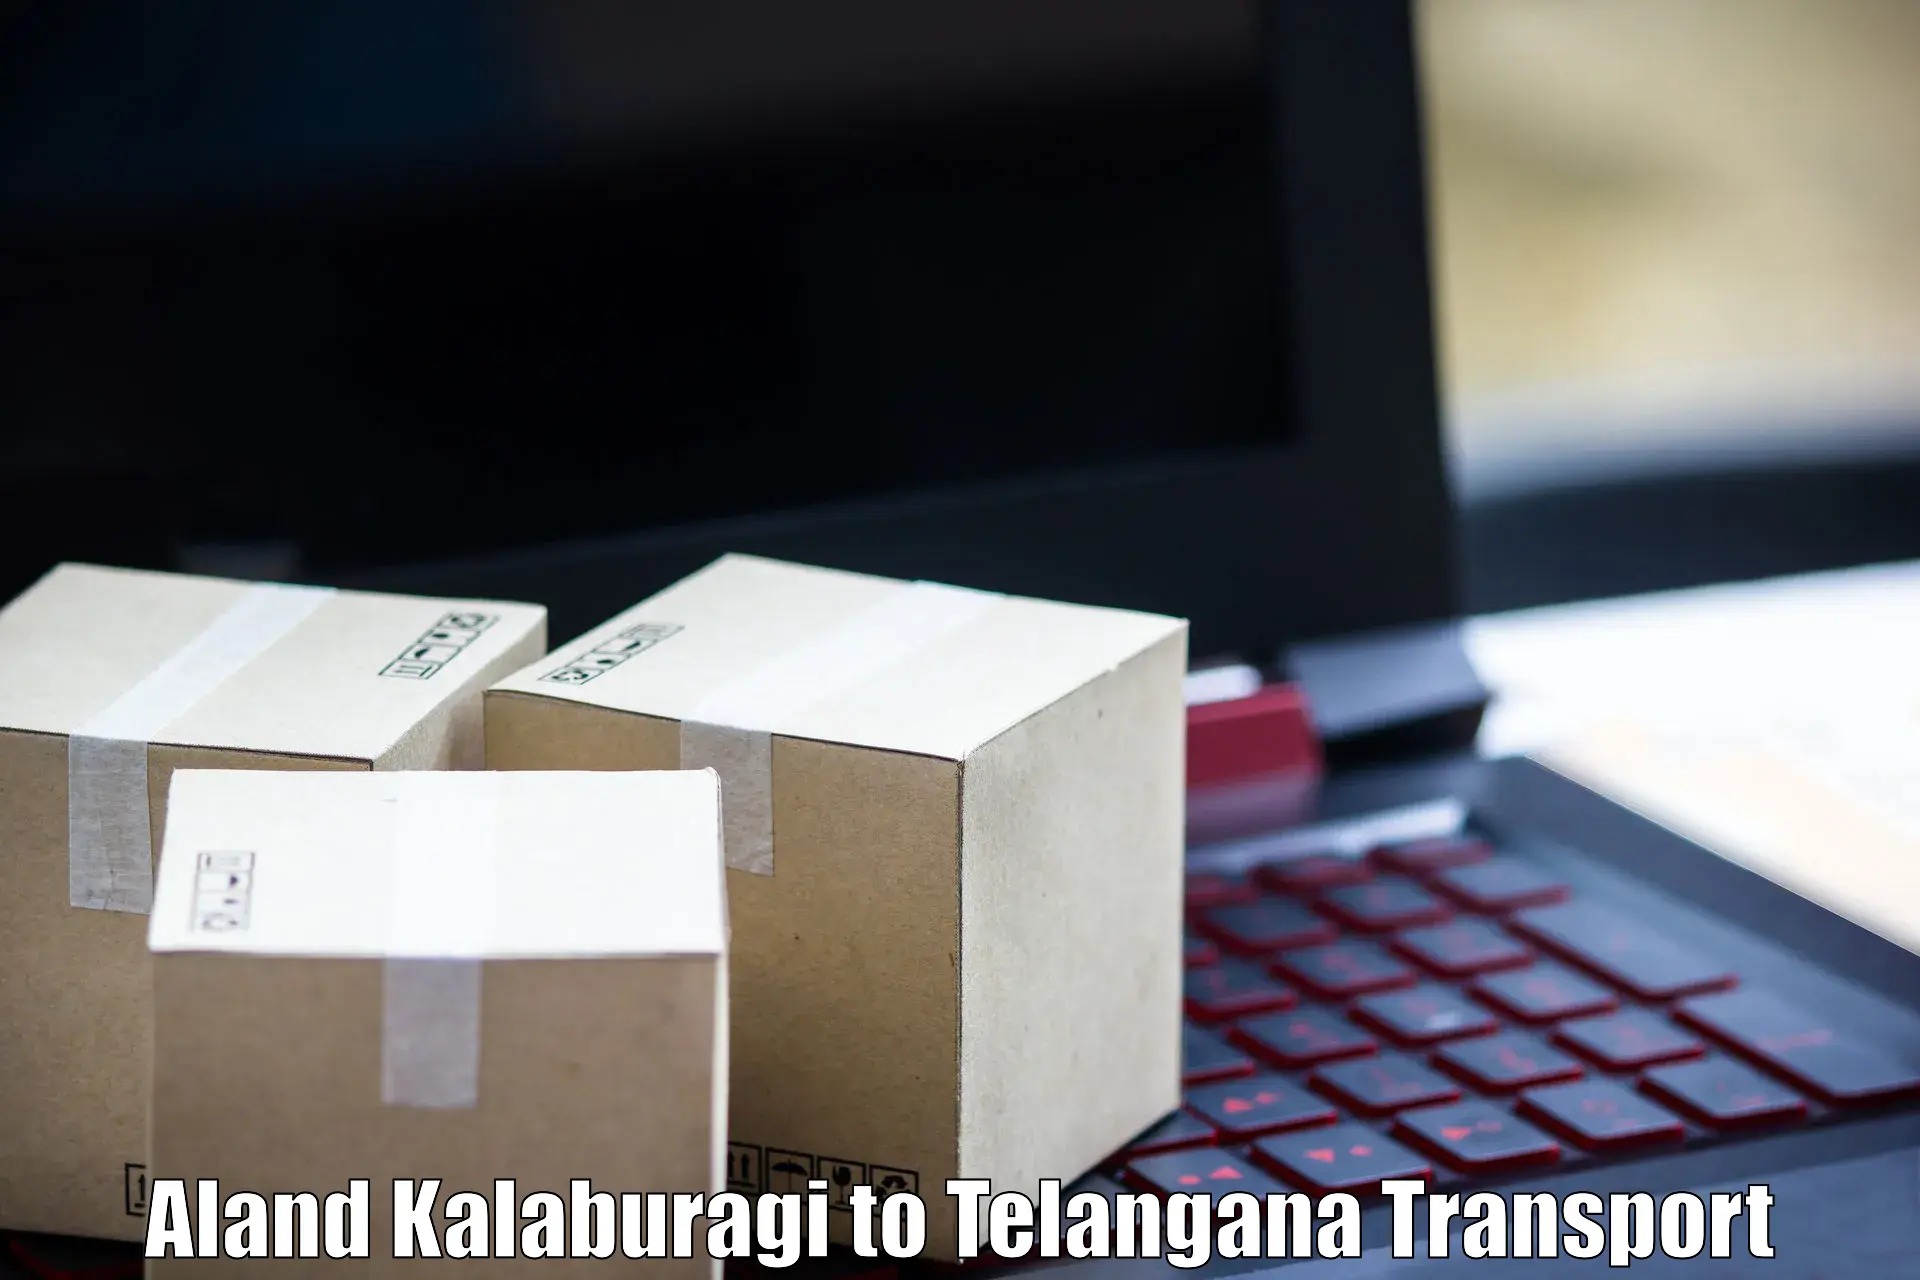 Online transport Aland Kalaburagi to Tadvai